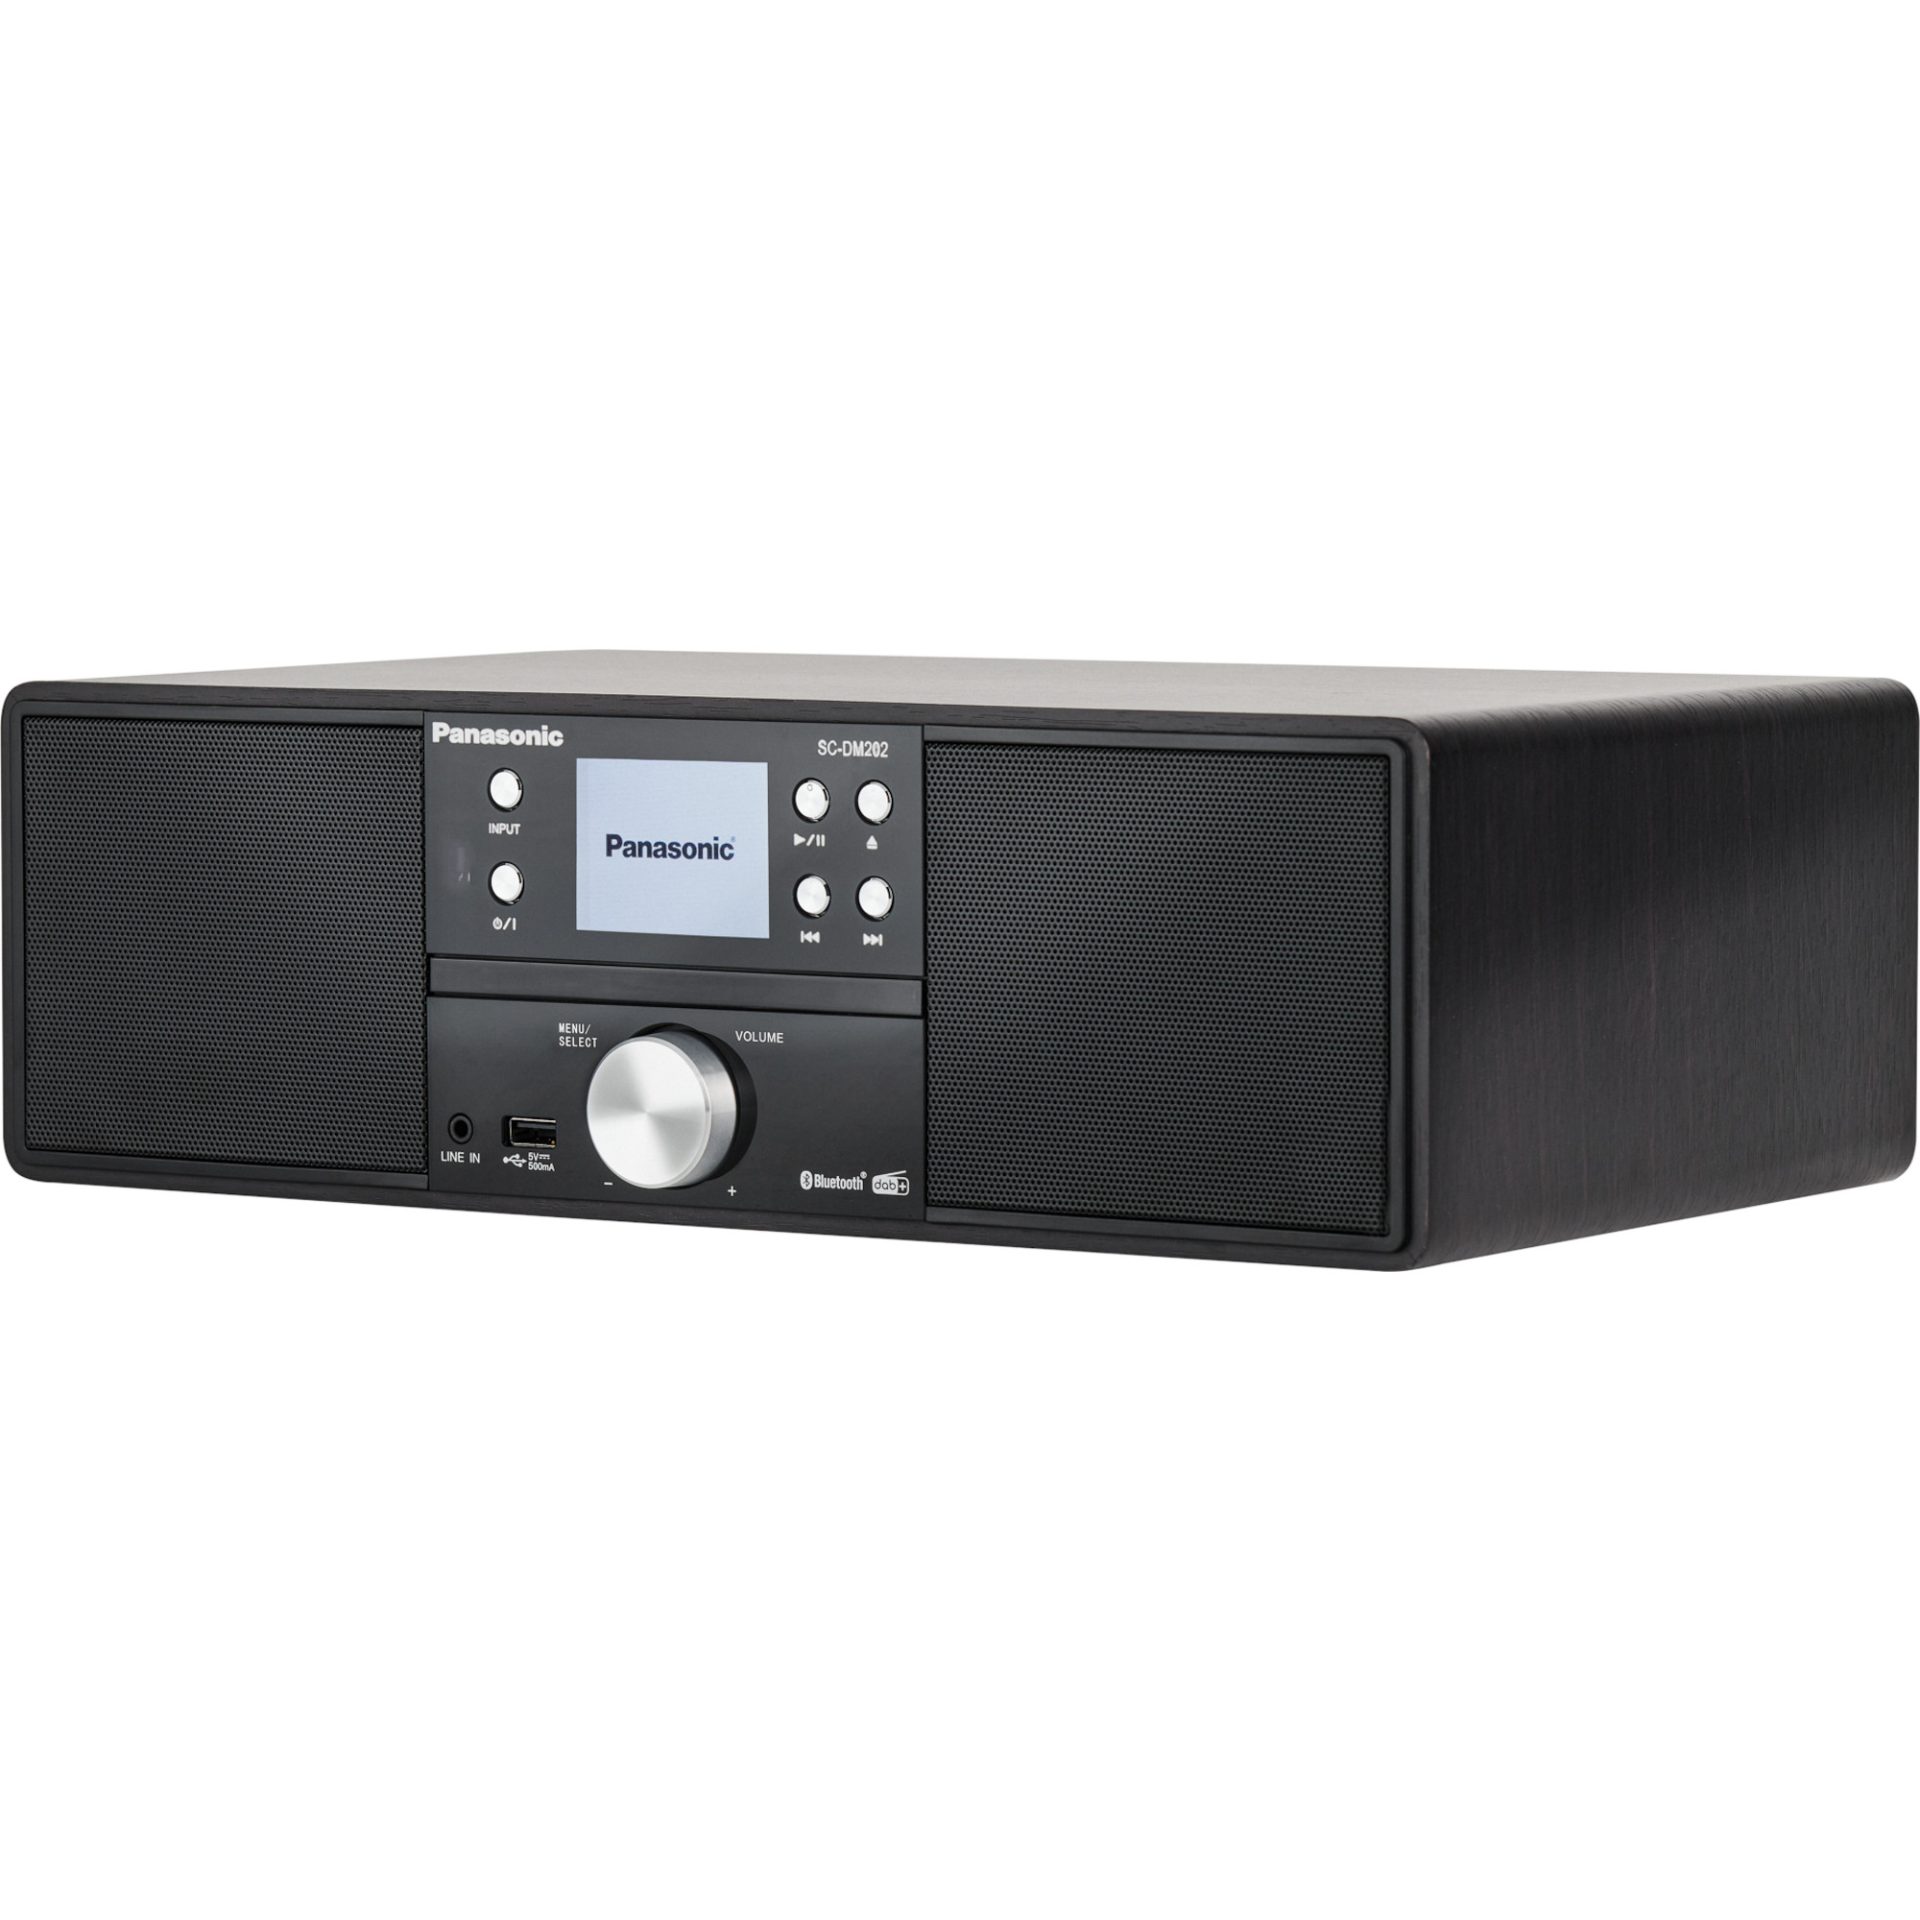 Zdjęcia - System audio Panasonic SC-DM202 uniwersalny system stereo z odtwarzaczem CD (DAB+, FM, 